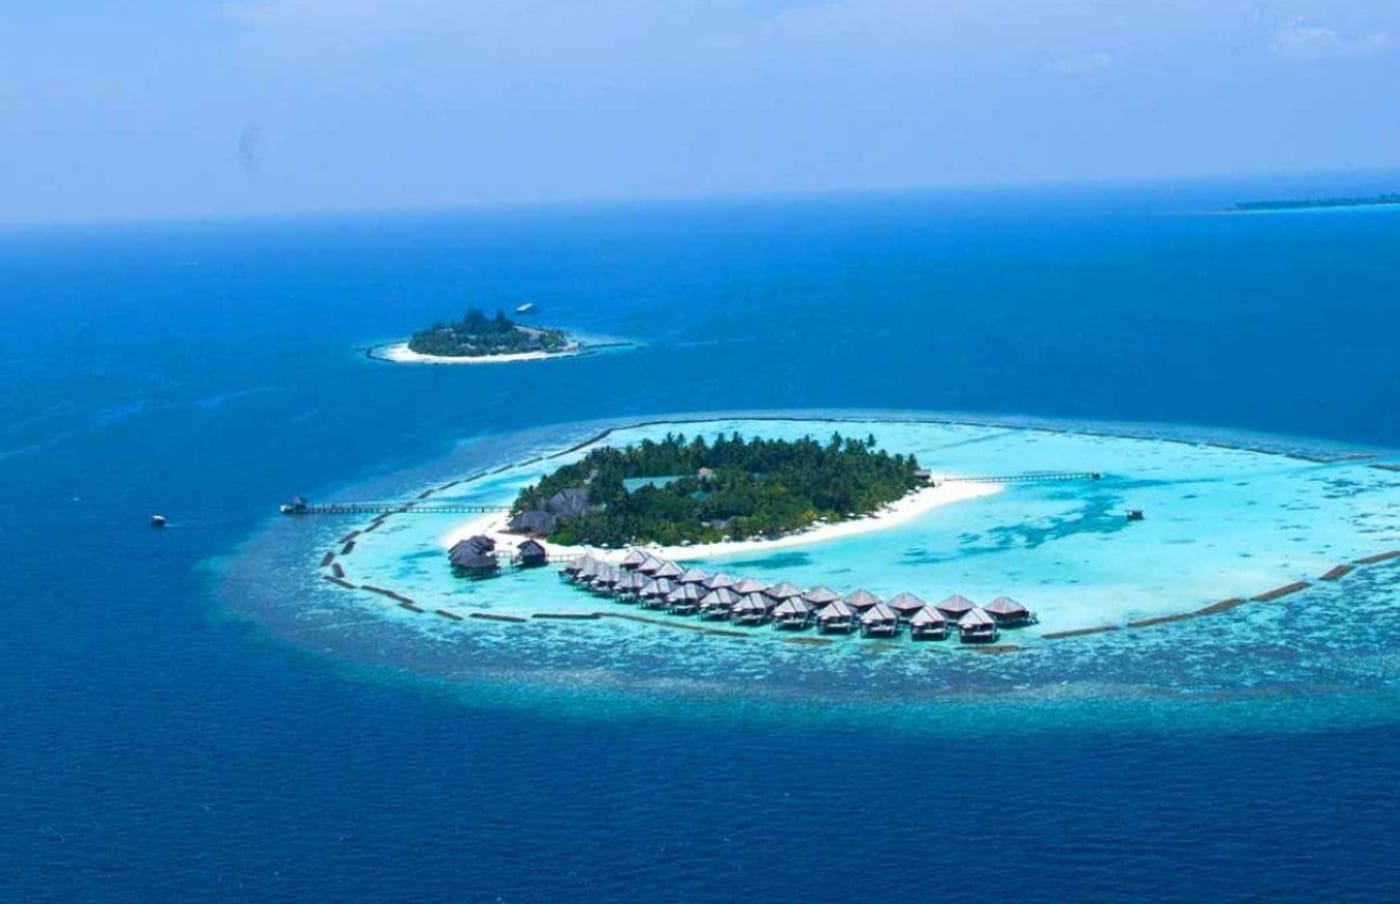 lets go maldives destination image